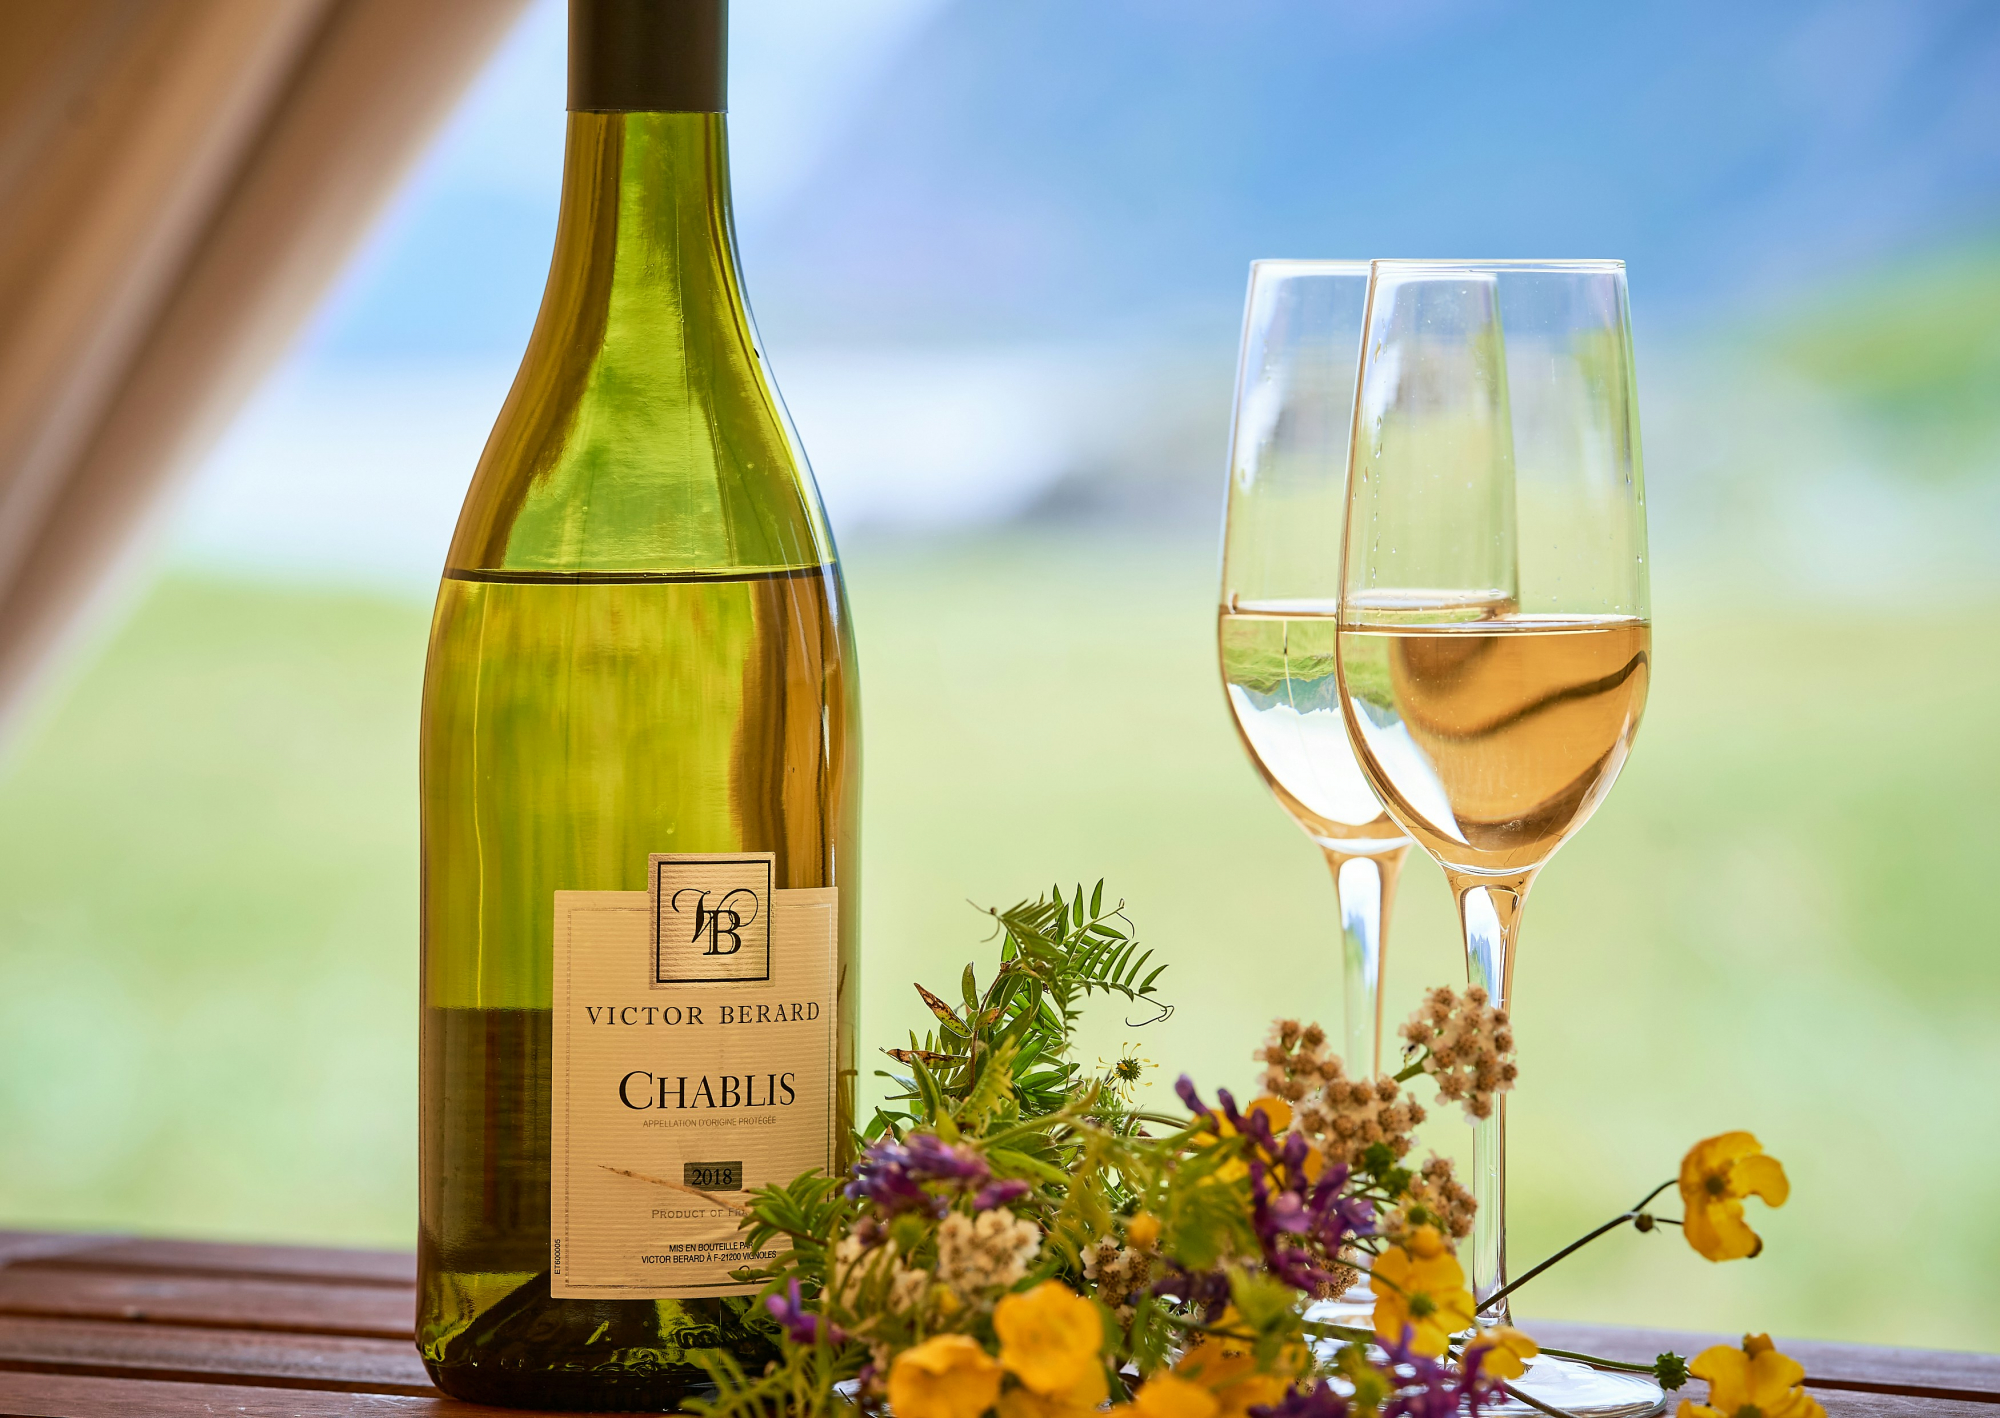 découvrez une sélection de vins blancs de qualité pour accompagner vos repas et vos moments de détente. trouvez le vin blanc parfait pour sublimer vos instants de convivialité.